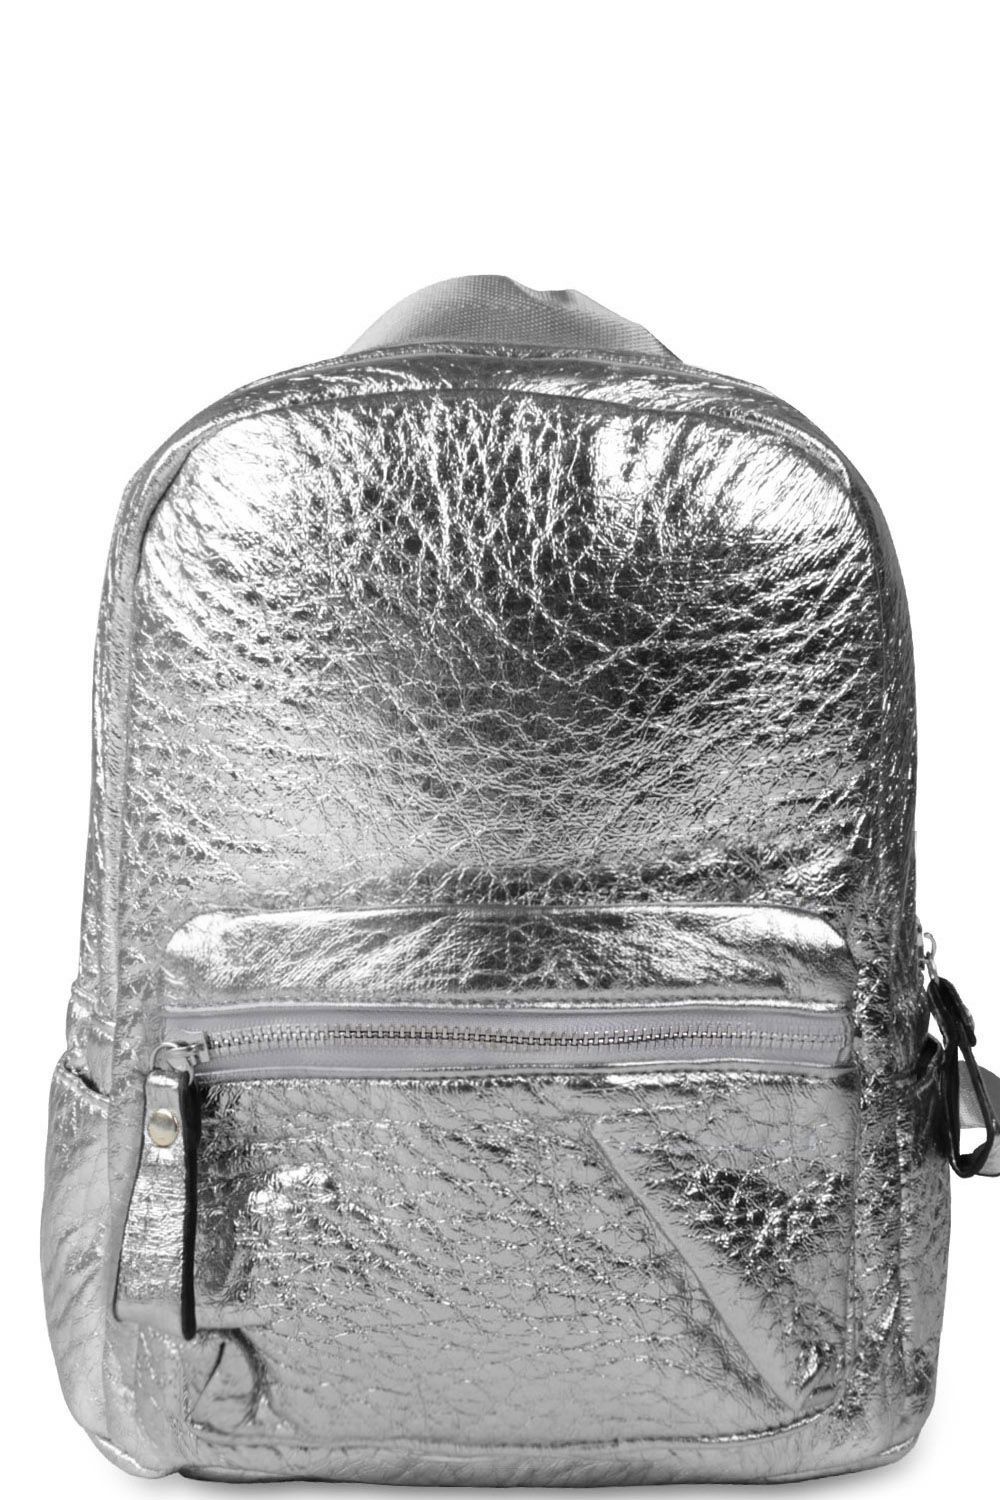 Рюкзак Multibrand, размер UNI, цвет серый 023-silver - фото 1